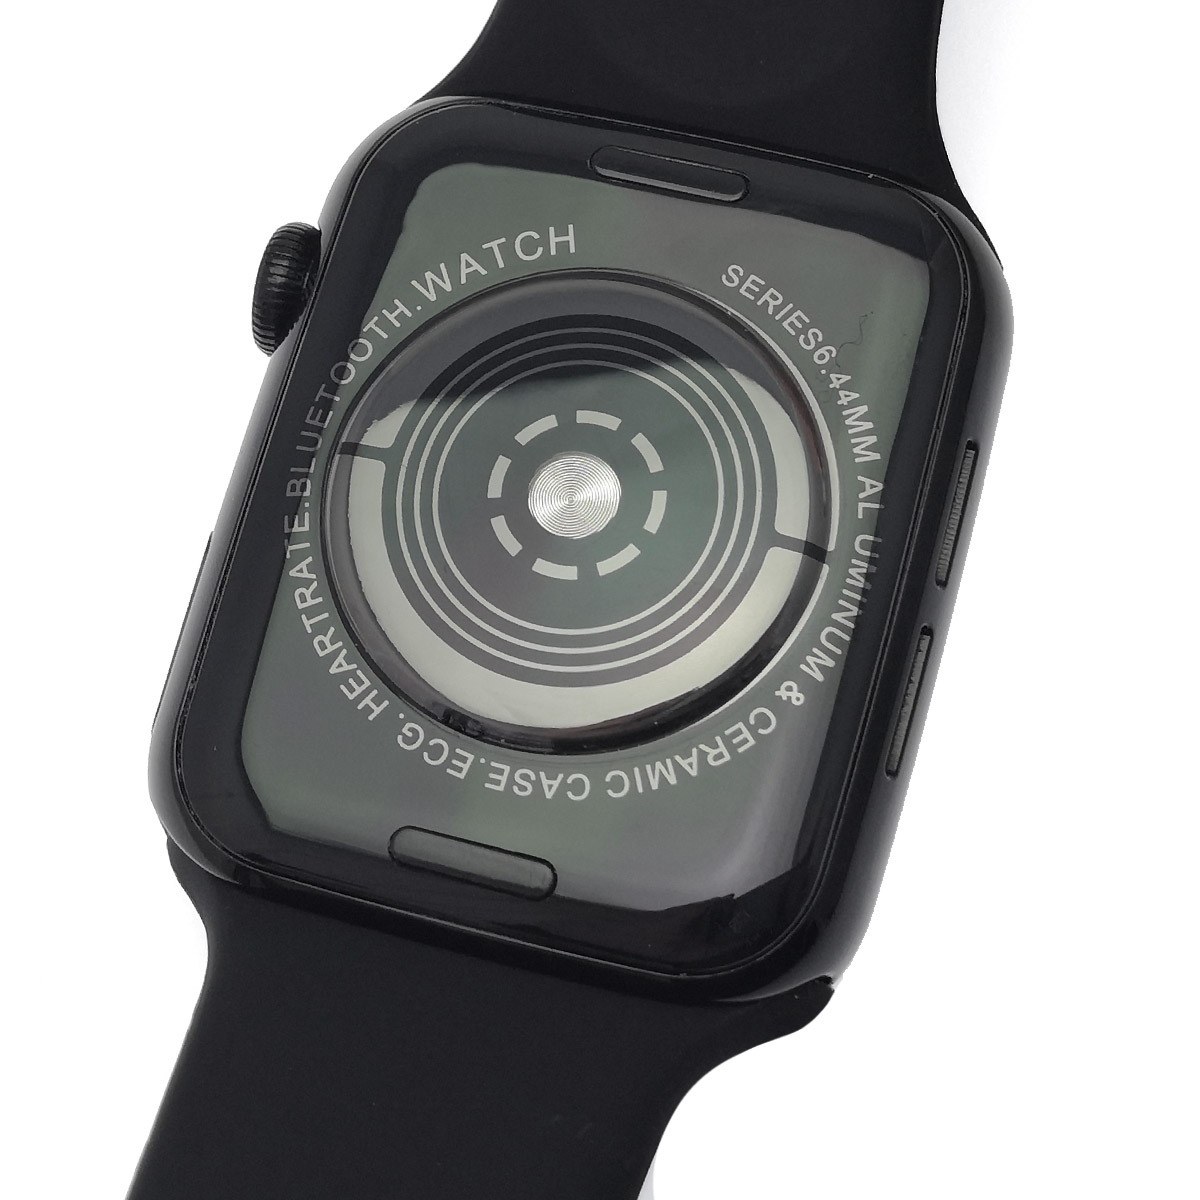 Смарт-часы Smart Watch K8, Bluetooth, шагомер, датчик пульса, цвет черный